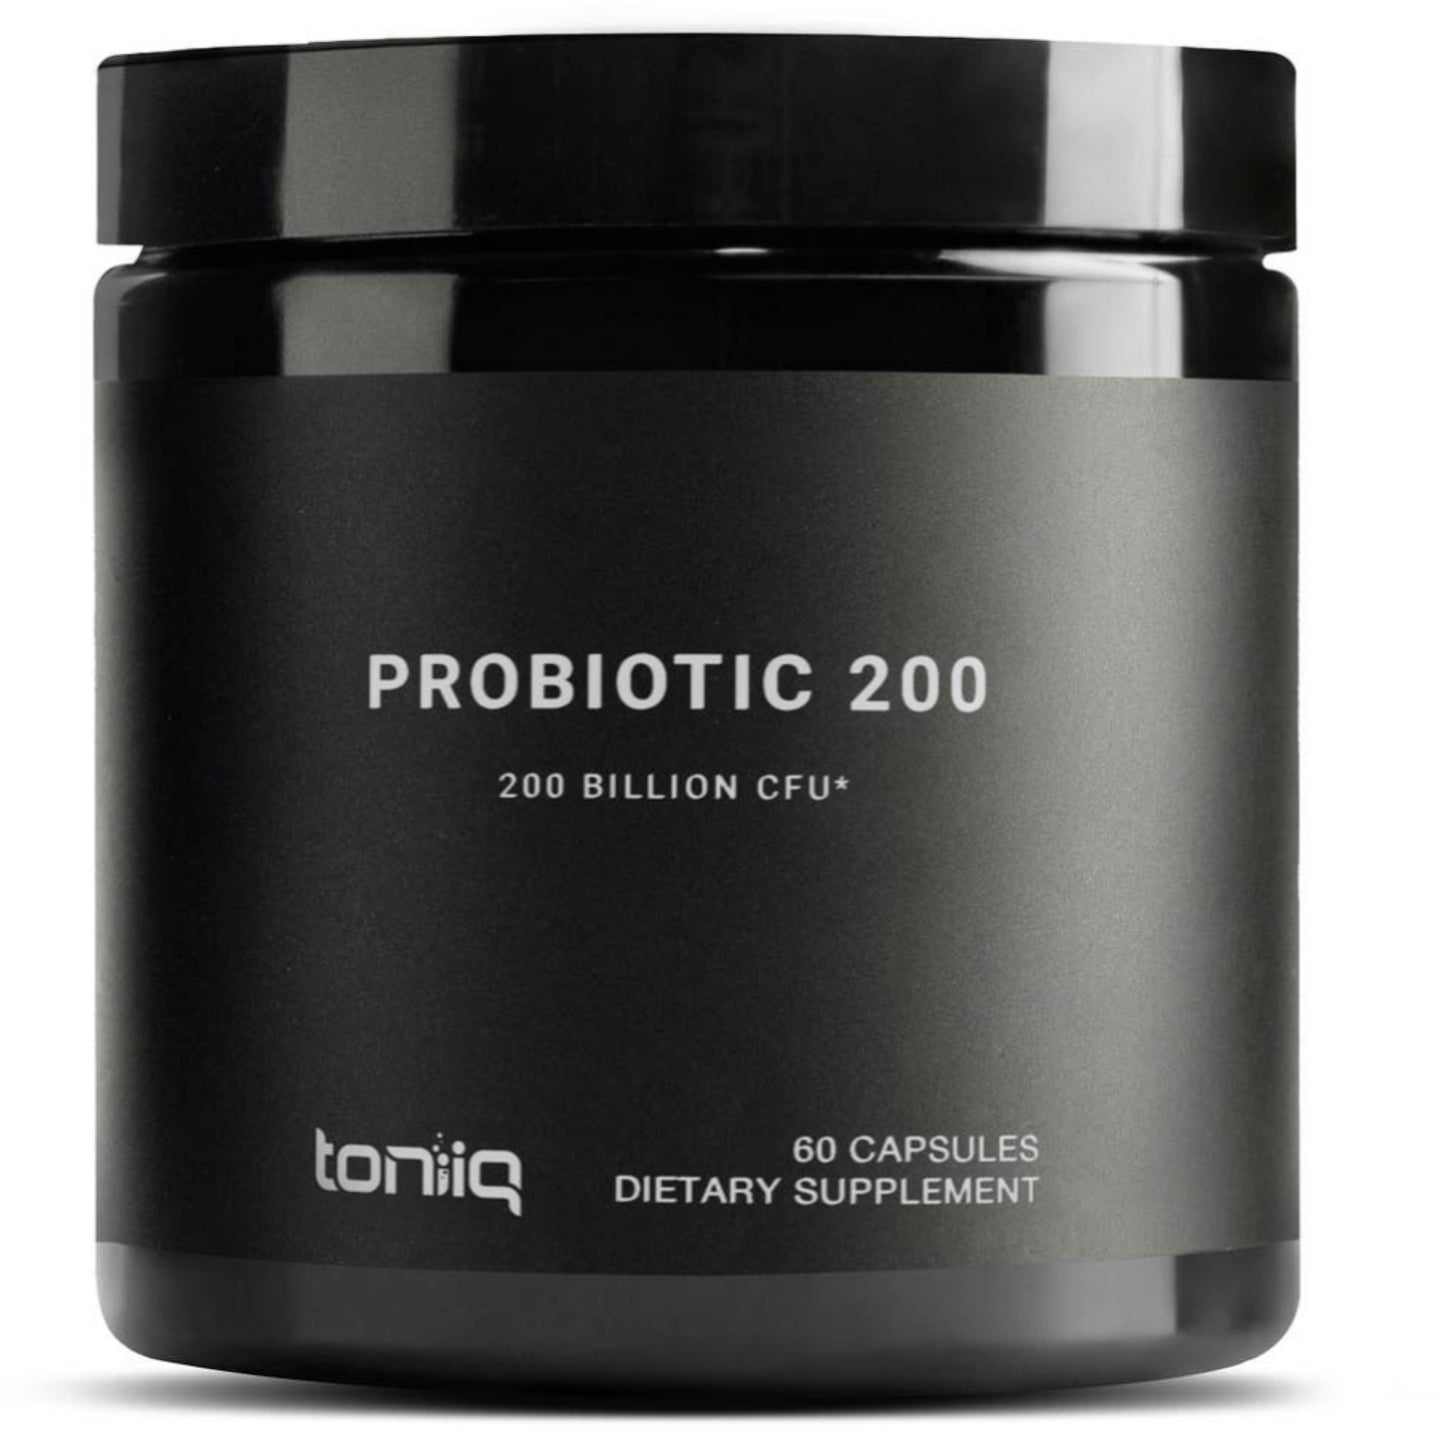 Probiotic 200